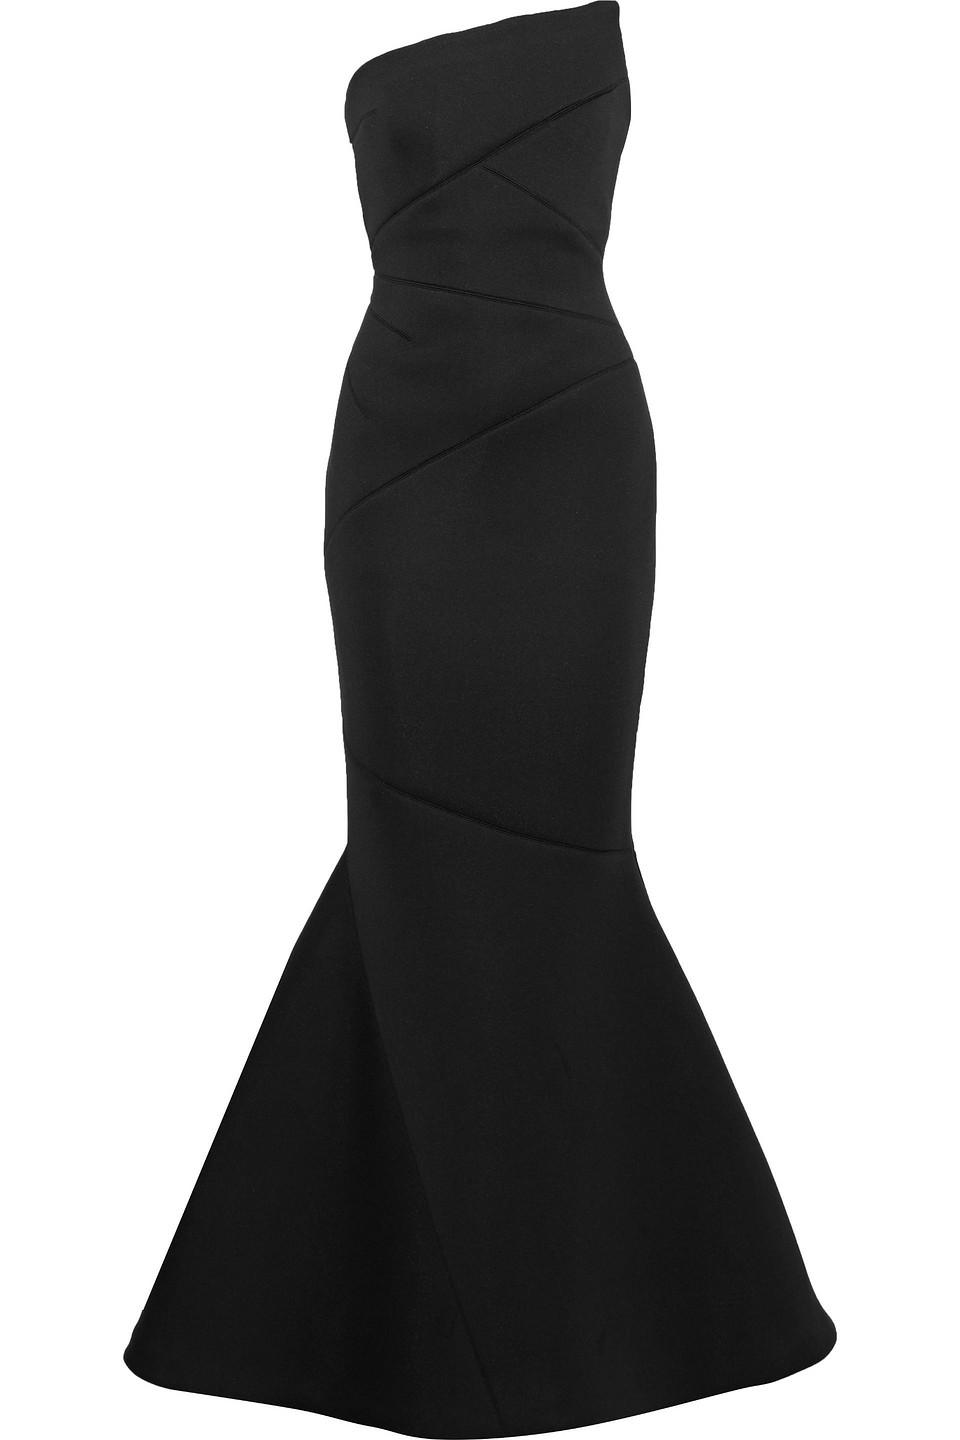 Rachel Gilbert Adelia Strapless Neoprene Gown Black | Lyst UK